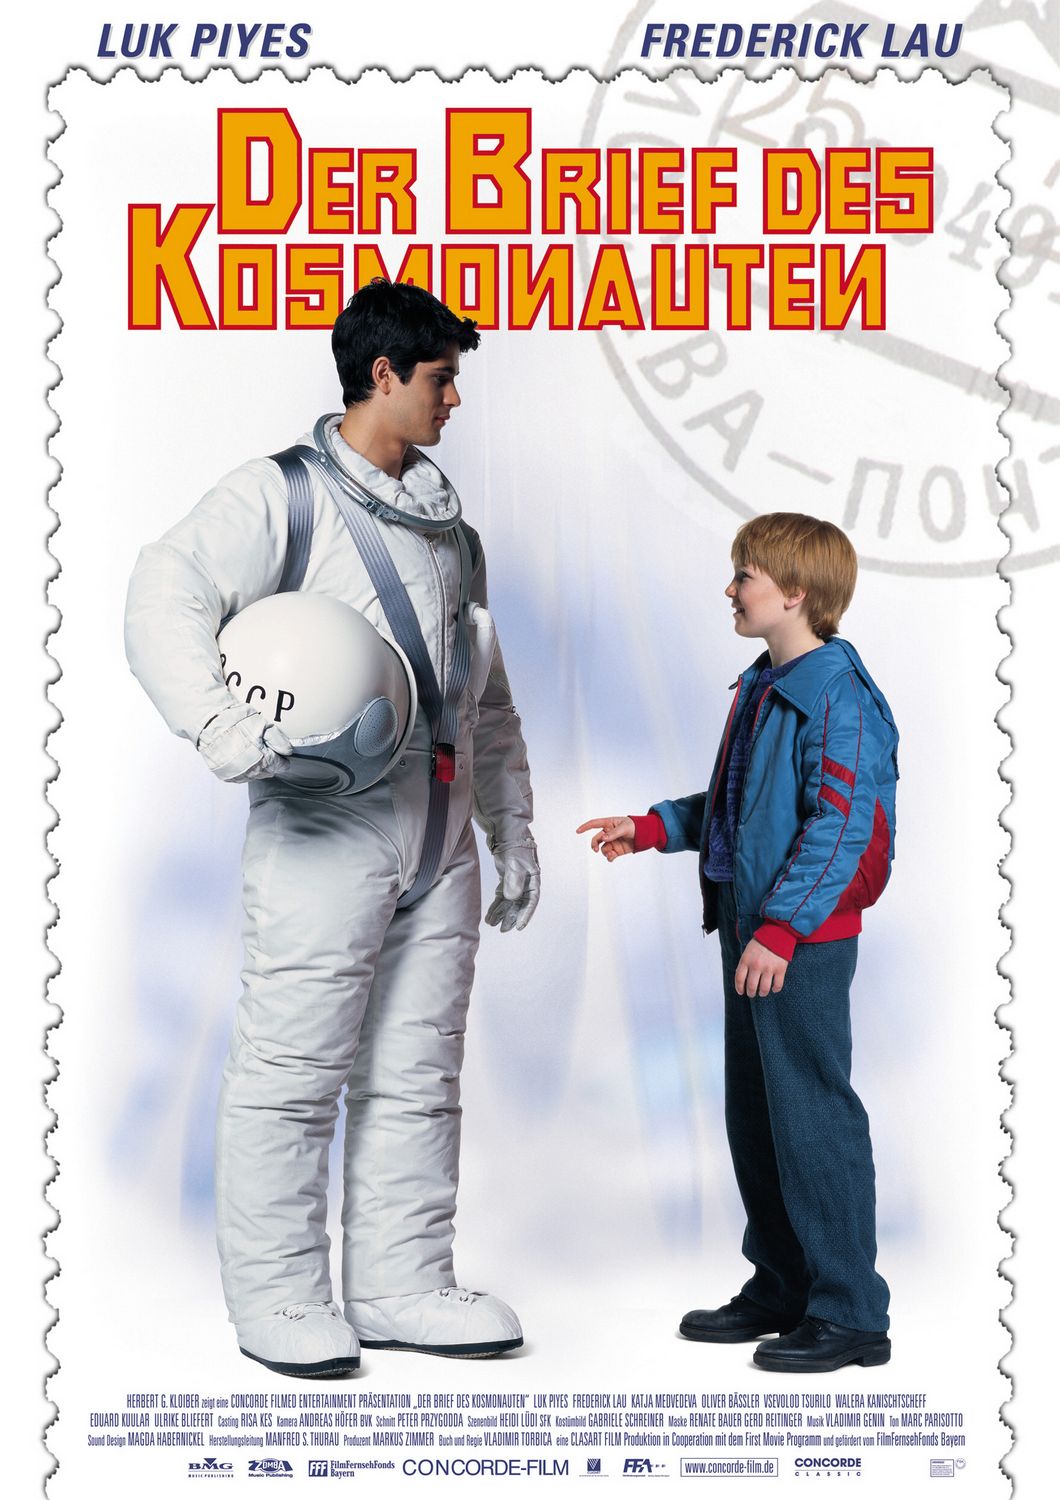 Extra Large Movie Poster Image for Brief des Kosmonauten, Der 